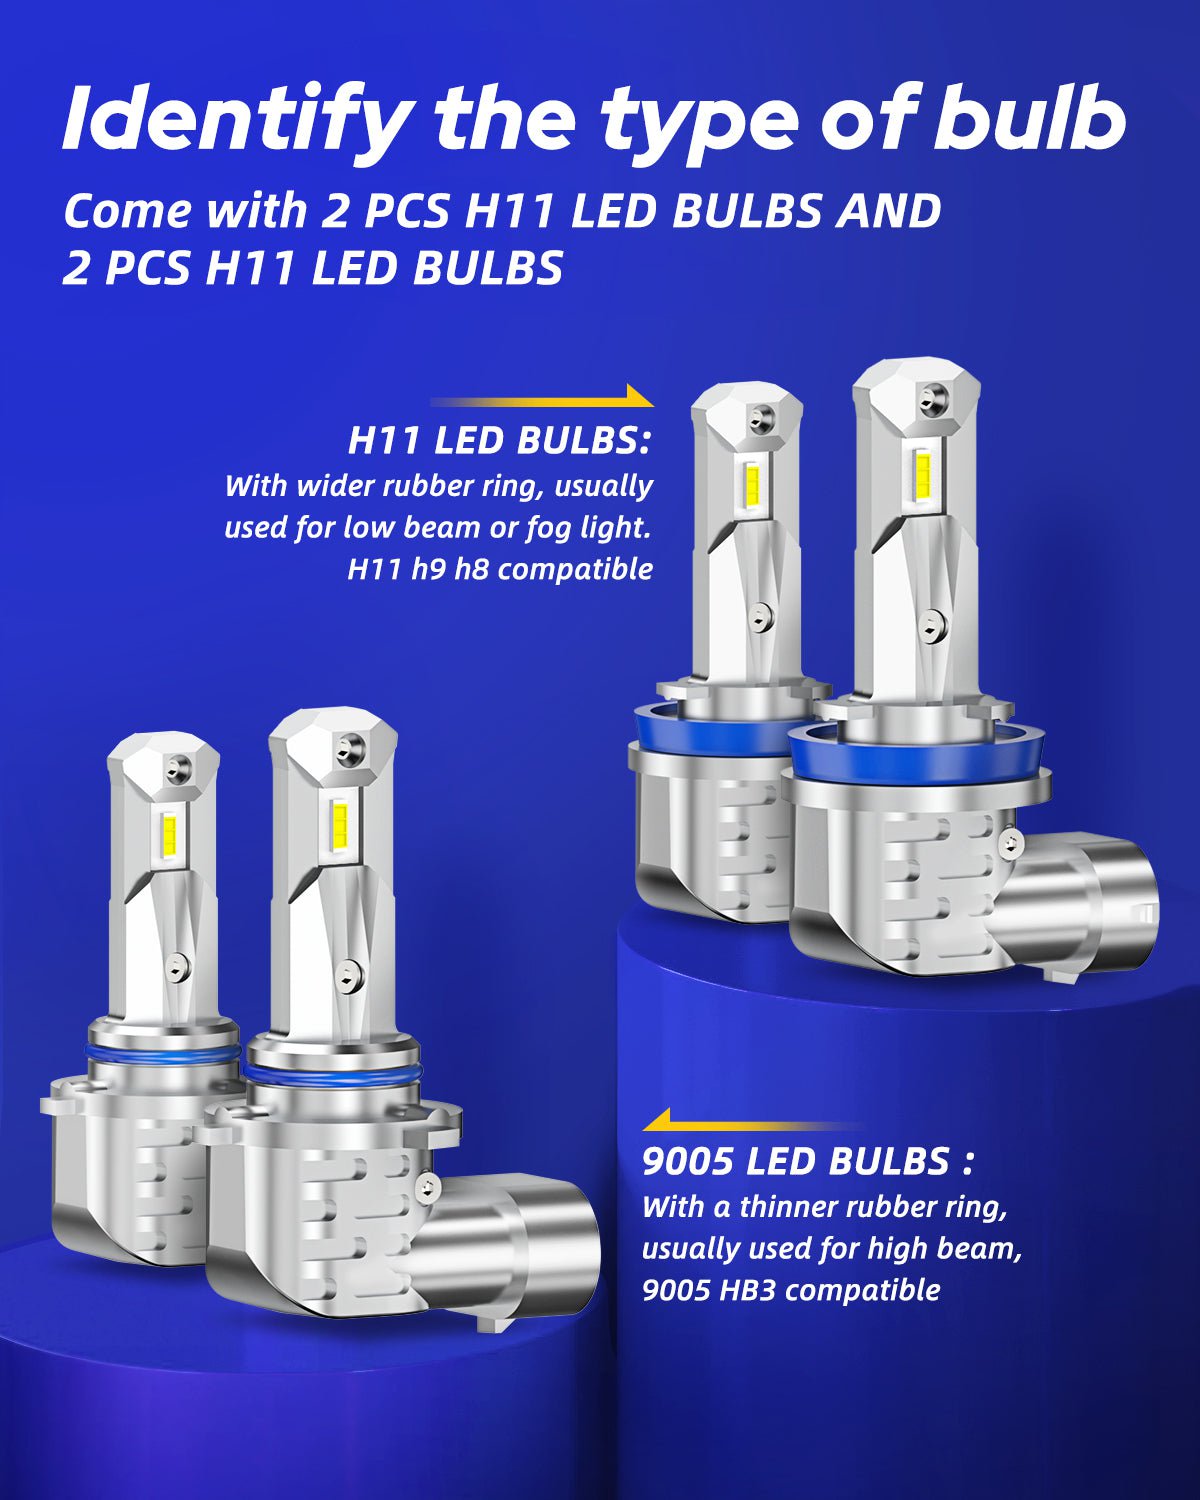 9005+H11 LED Headlight Bulbs Kit 6000K 12000LM White 4 PCS – AUTOONE